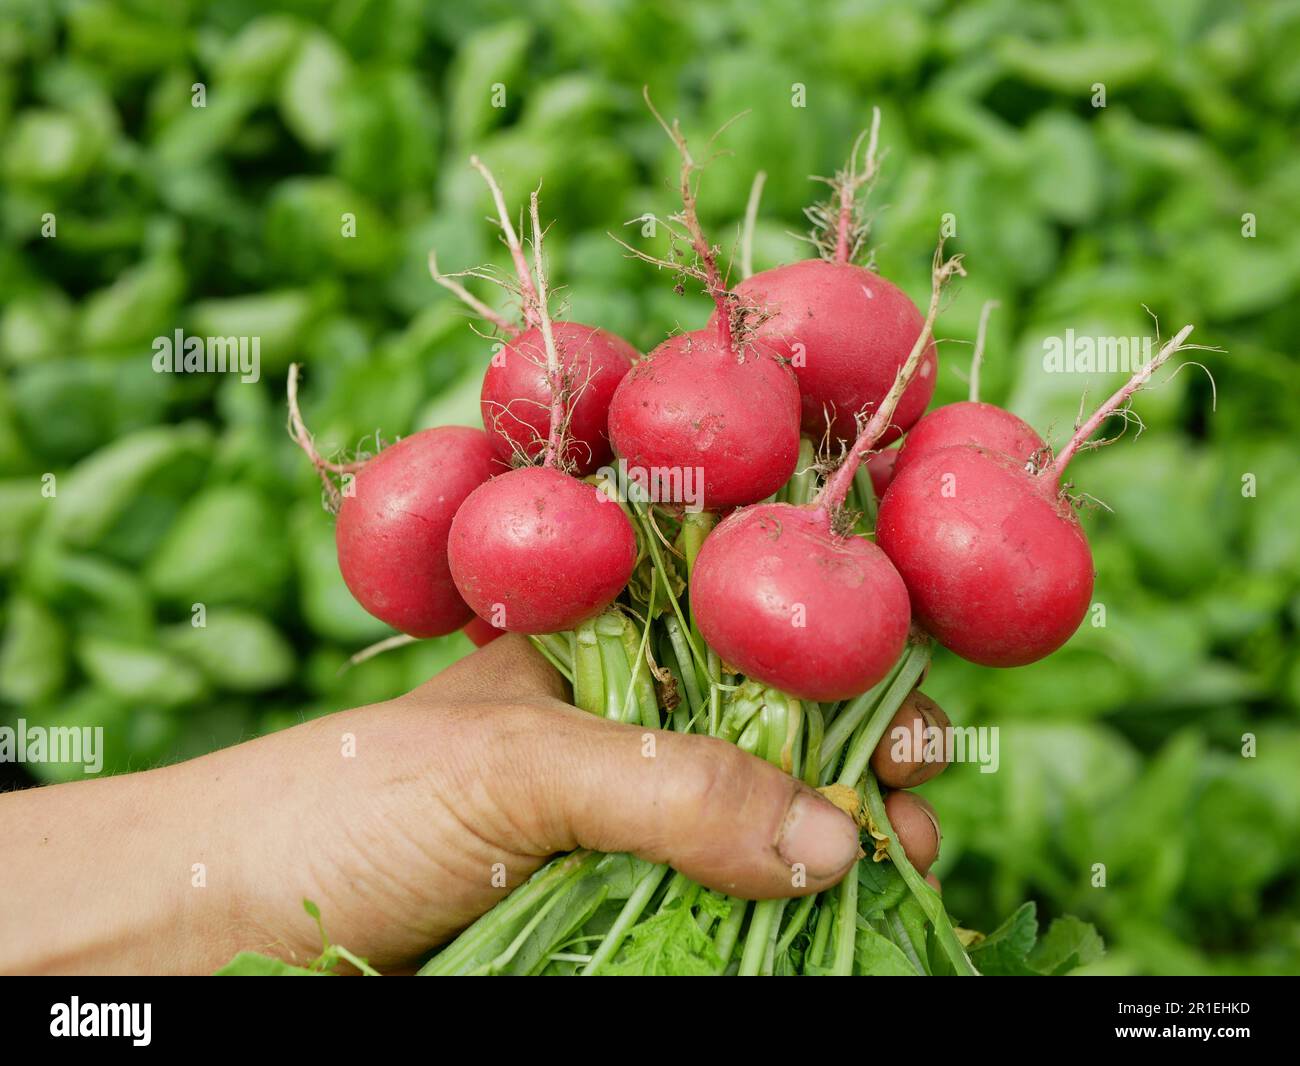 Récolte de radis frais main de légumes sur le marché boutique Raphanus raphanistrum caisse germe pousse bio paysan terrain agricole ferme ecolog Banque D'Images